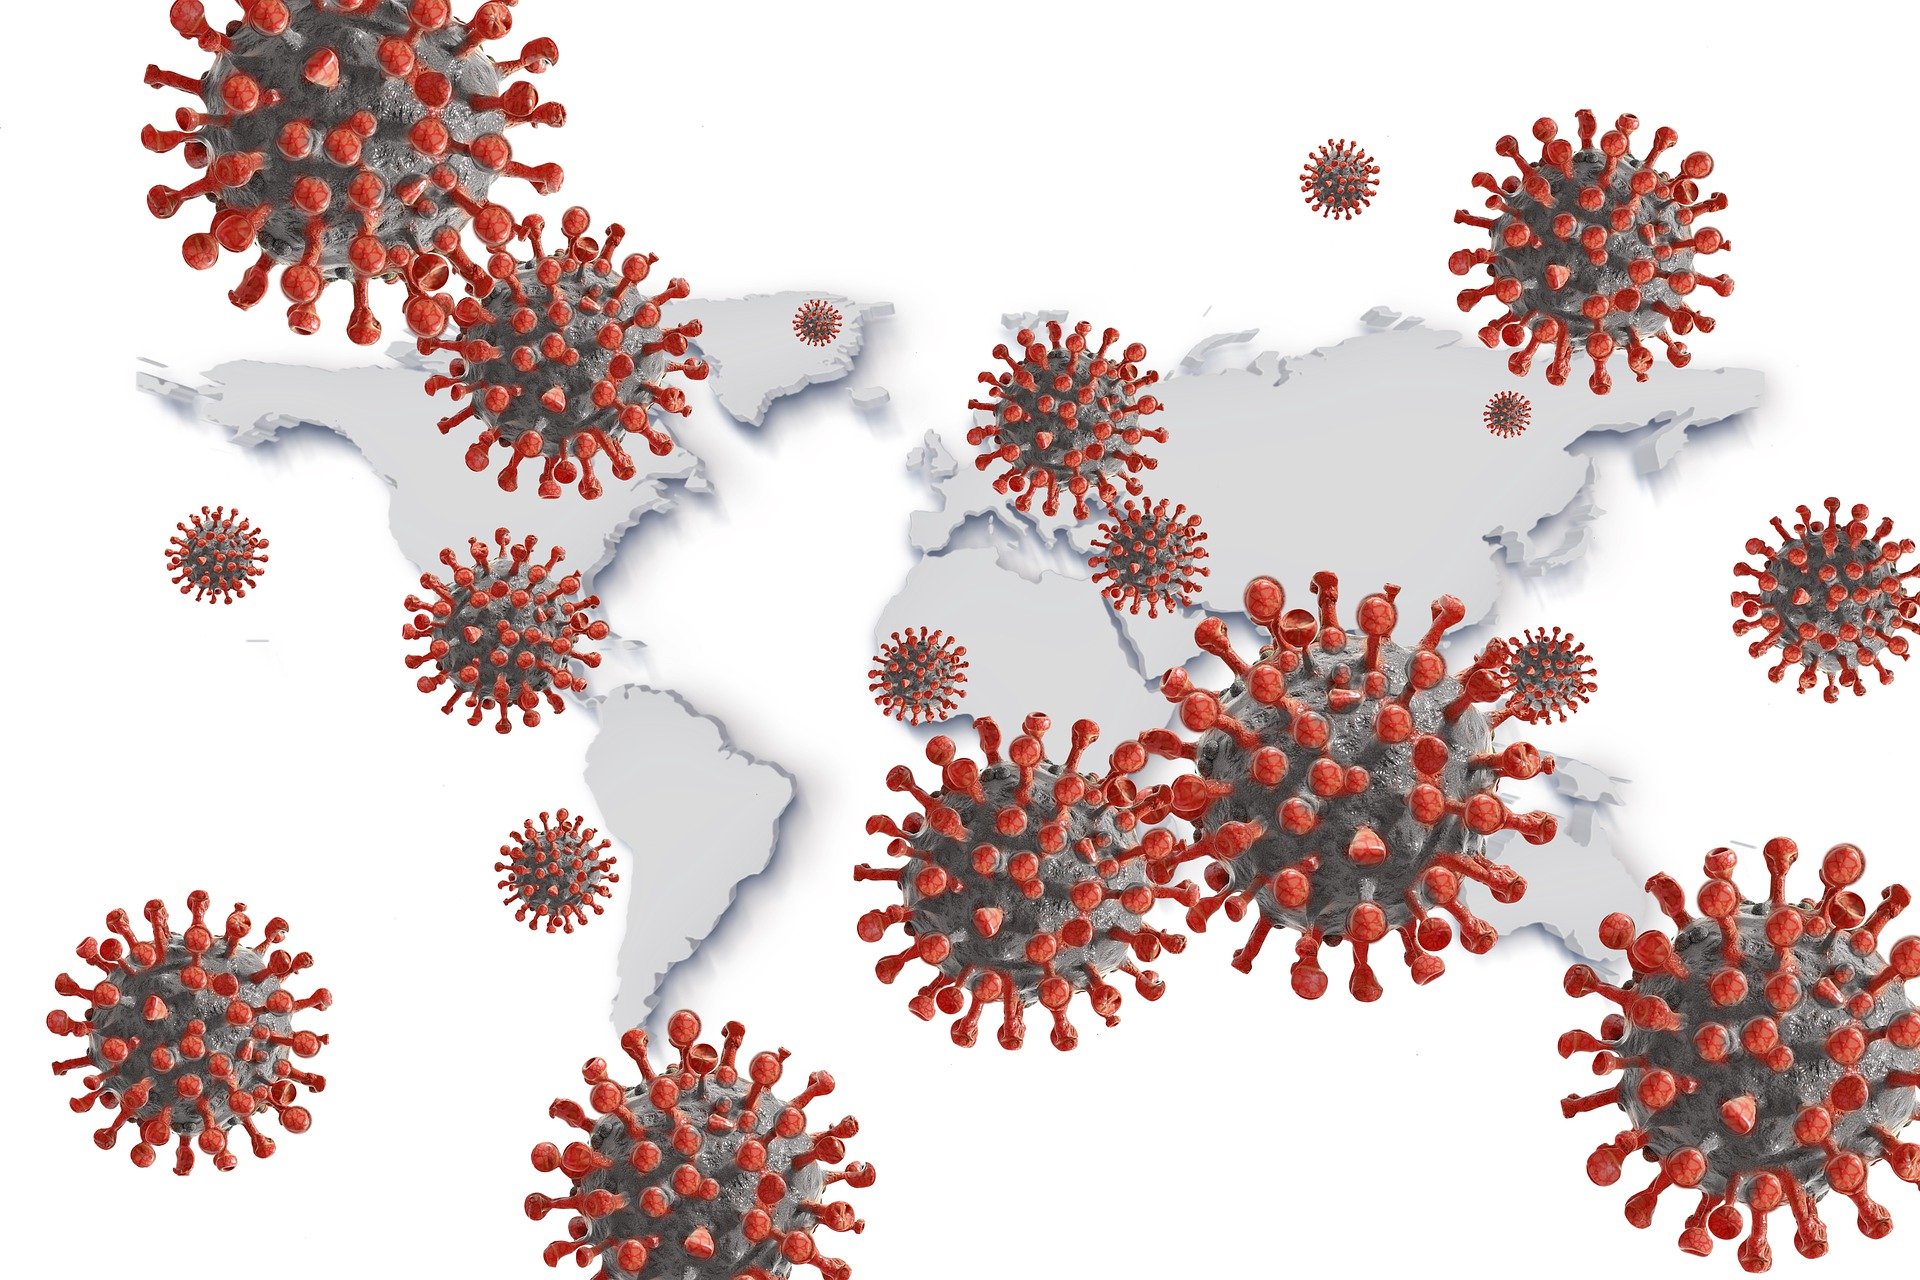 Szczepionka w walce z koronawirusem. Czy powstrzyma pandemię? [PODSUMOWANIE PANDEMII 2020]